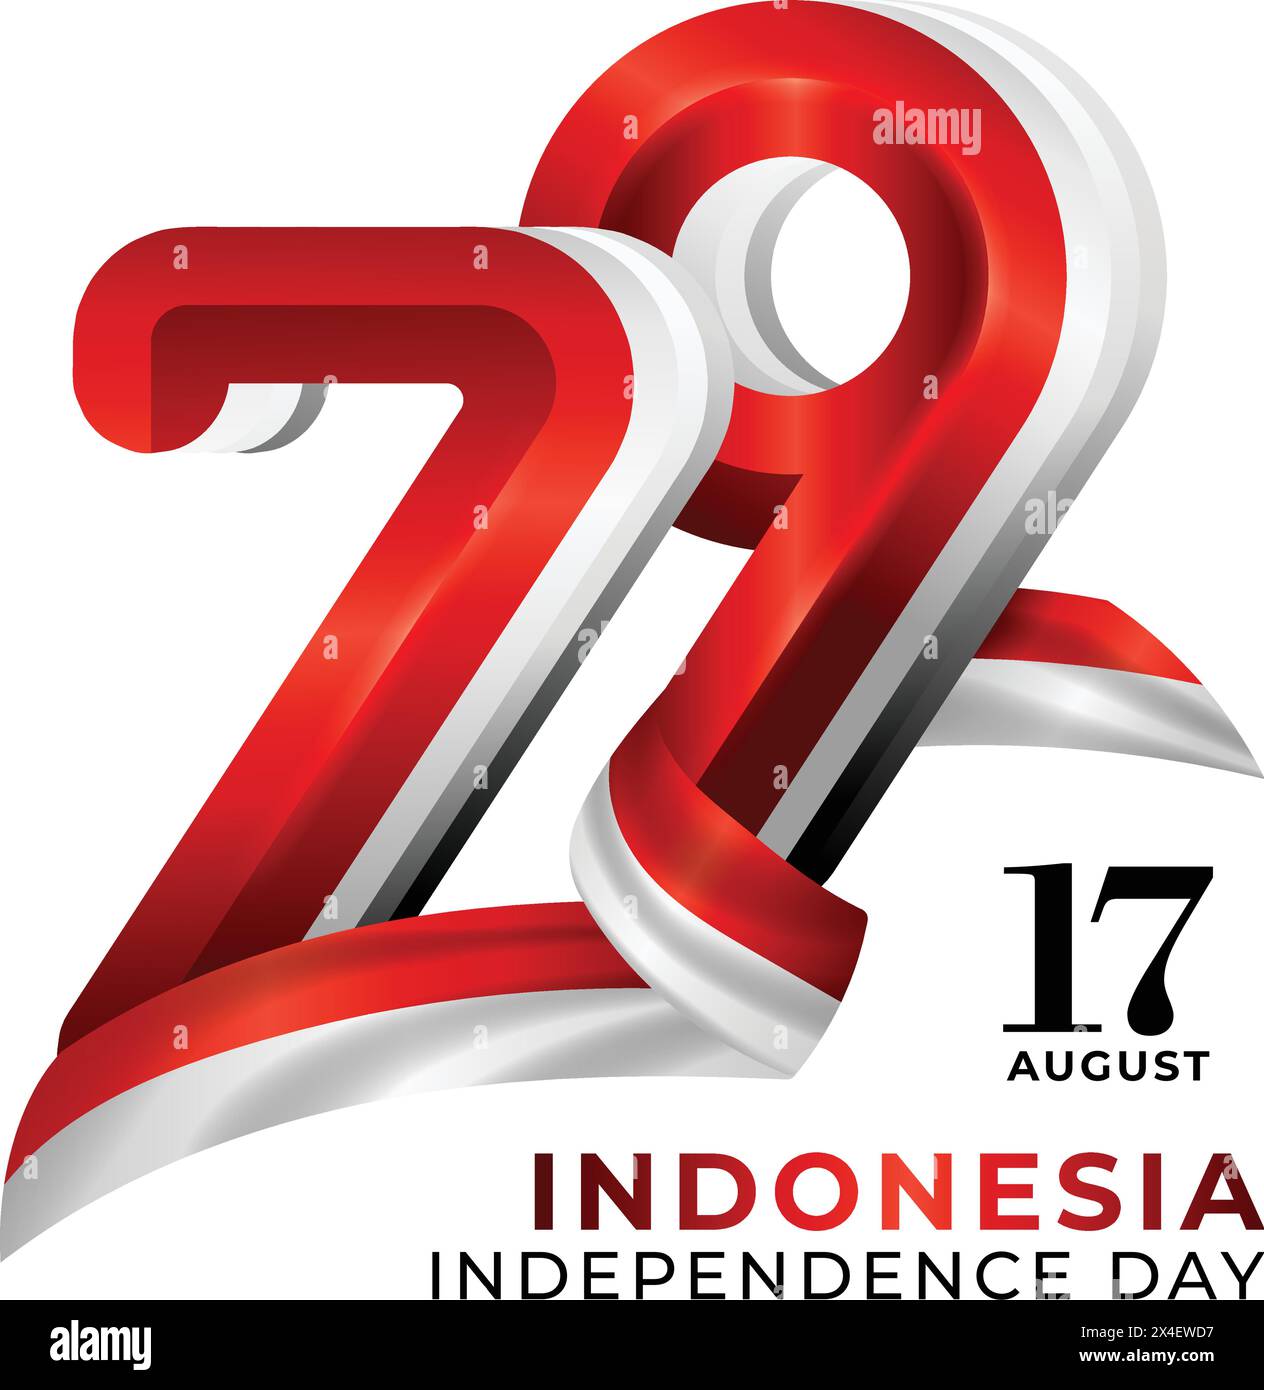 Felice 79° giorno dell'indipendenza dell'Indonesia, logo rosso bianco 79 con bandiera dell'indonesia Illustrazione Vettoriale